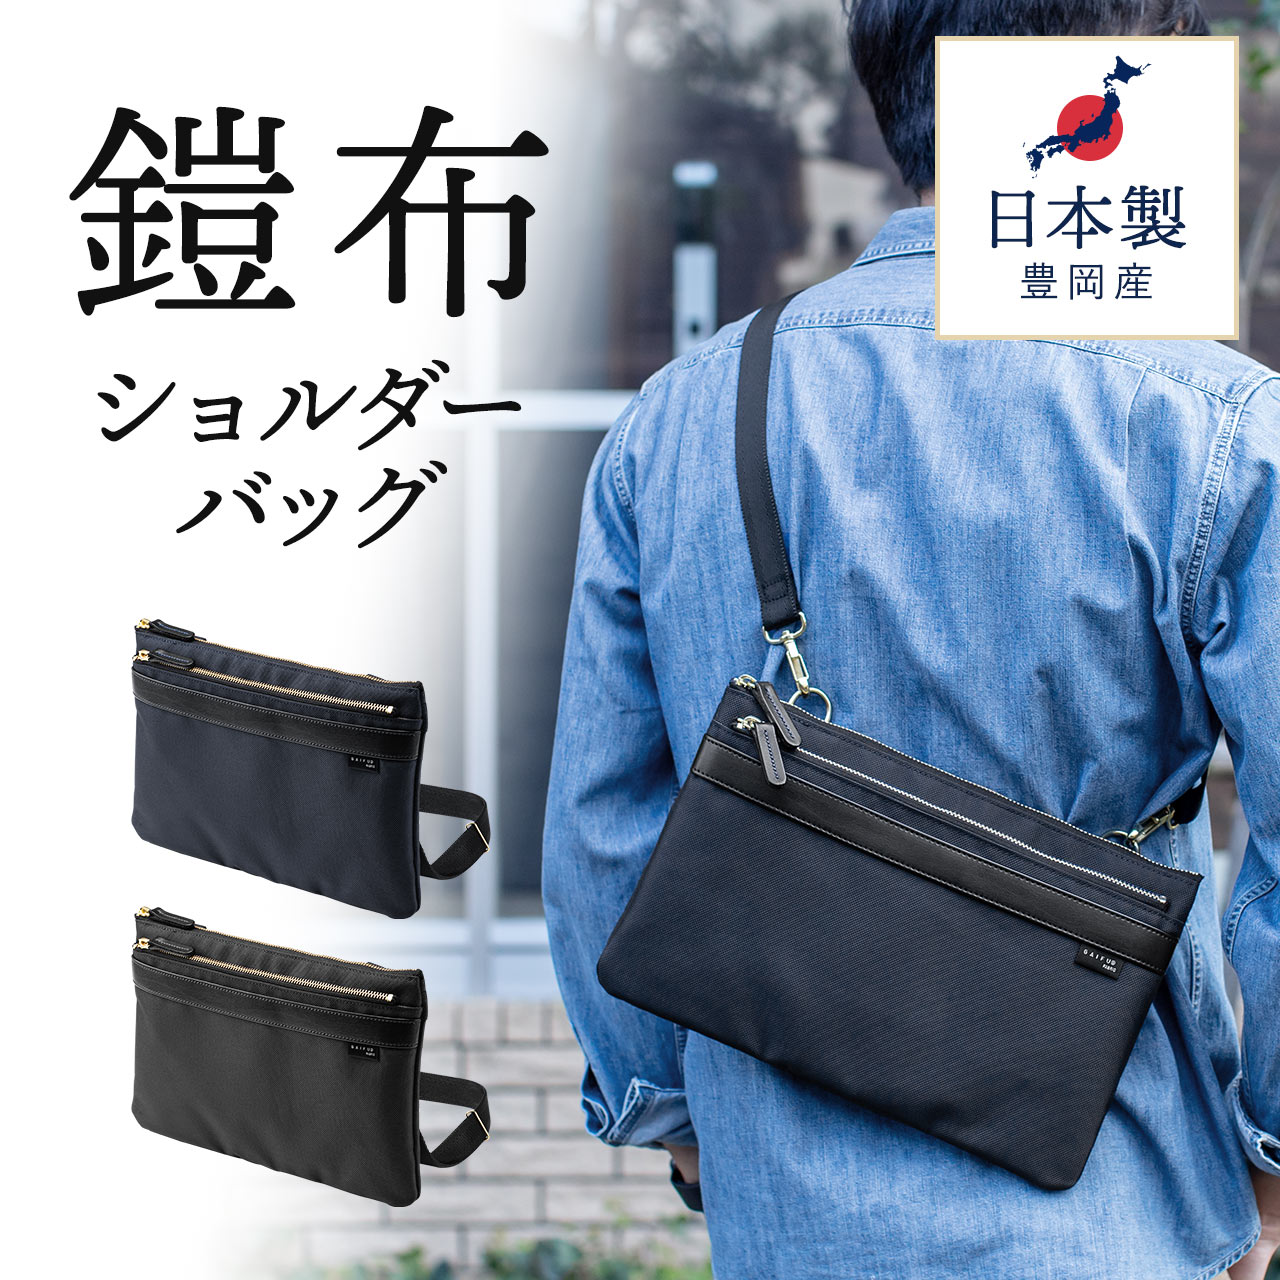 ミニショルダーバッグ サコッシュ 日本製 高強 鎧布 ナイロン 撥水 0 Bag177の販売商品 通販ならサンワダイレクト